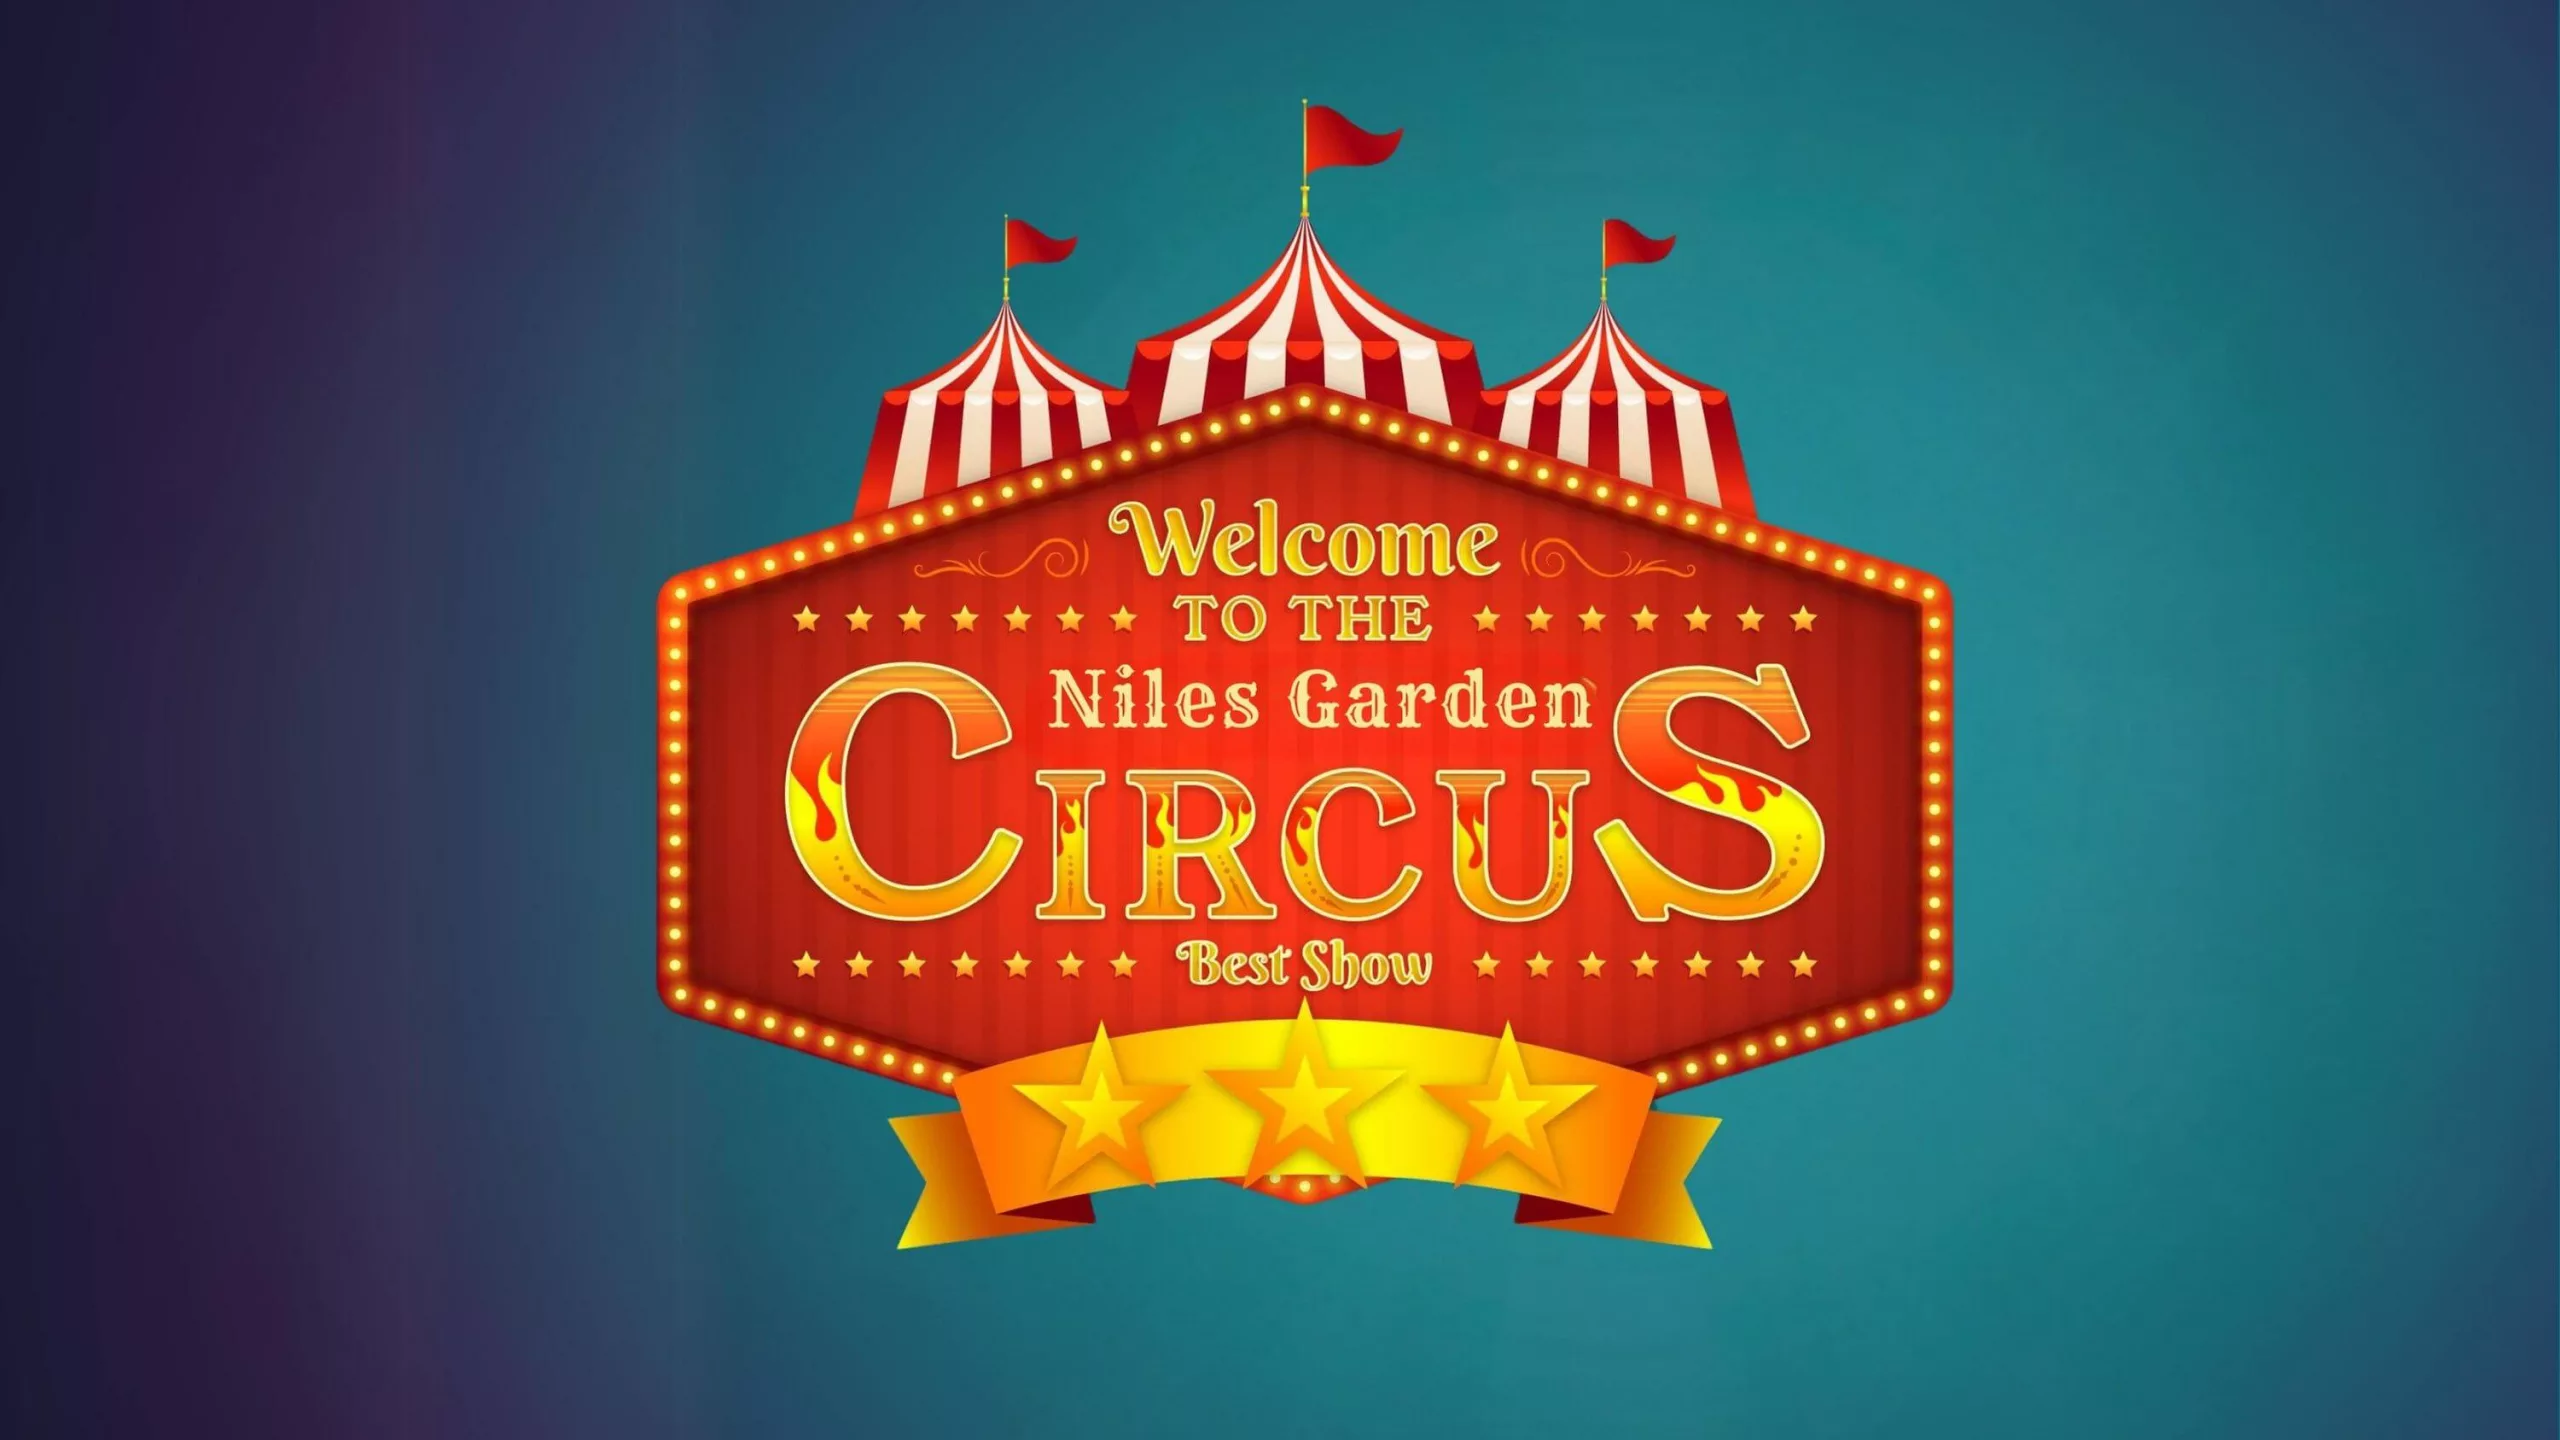 niles garden circus